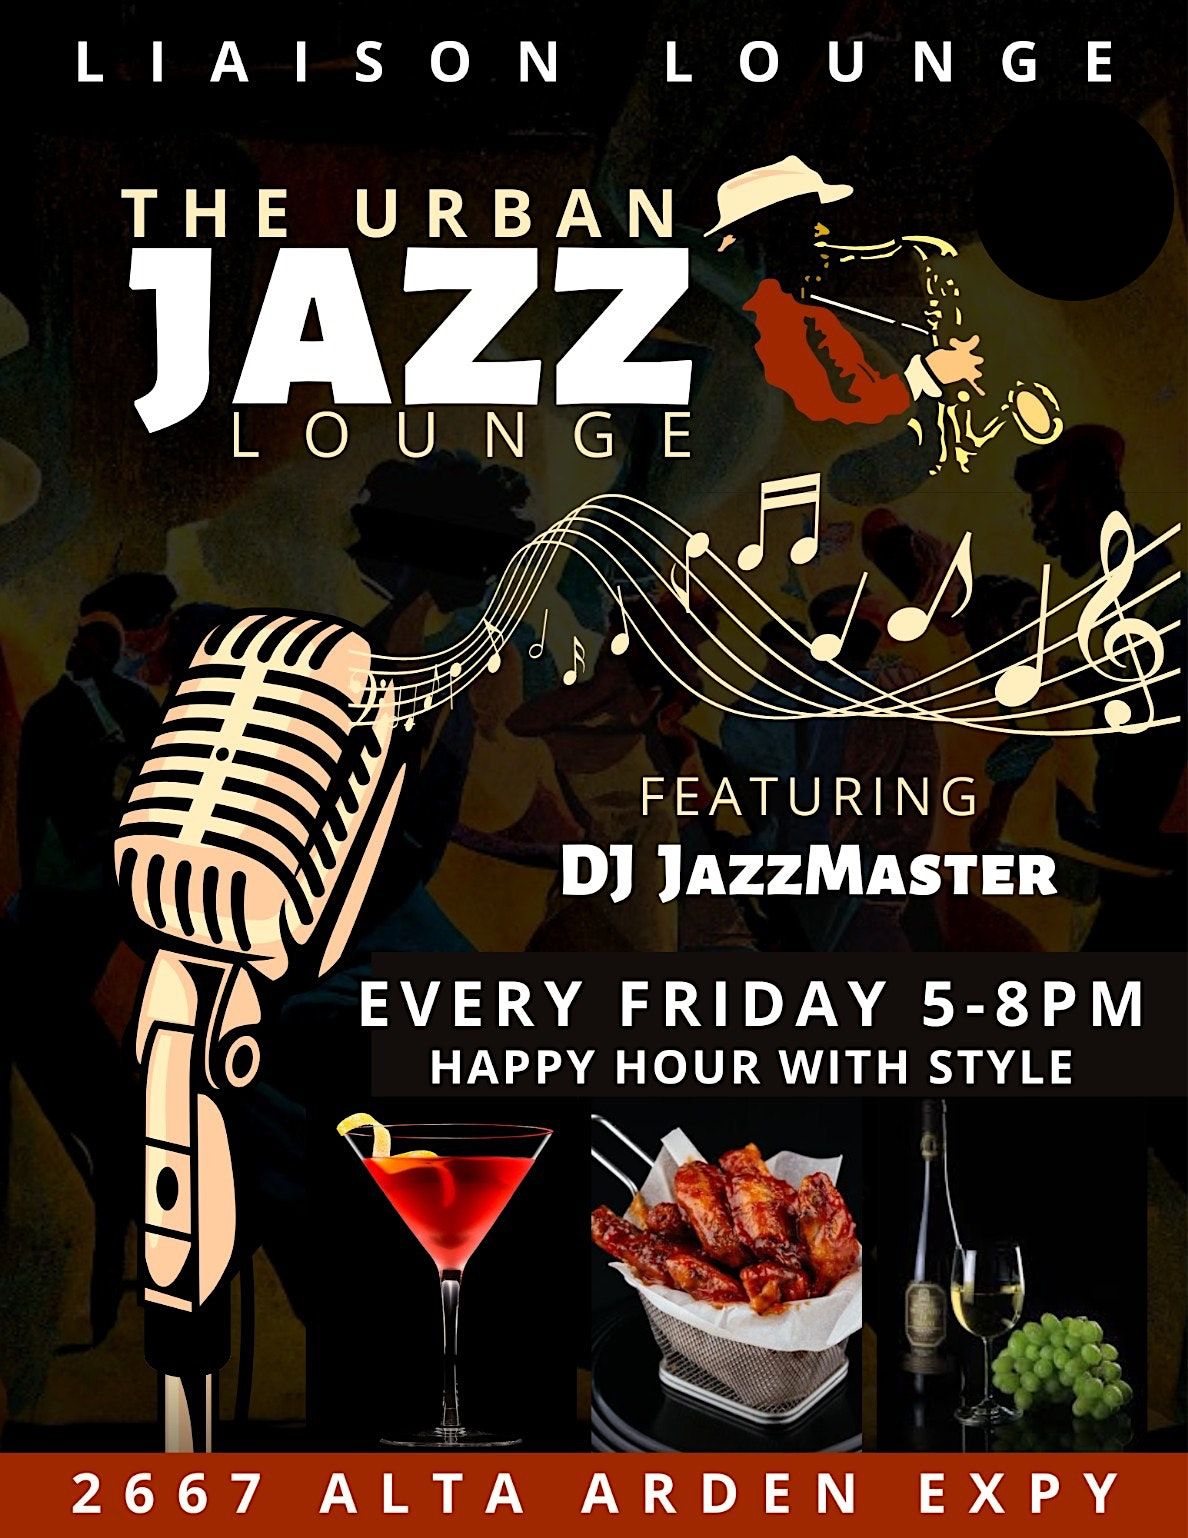 Urban Jazz Friday 5-8 at Liaison Lounge | Liaison Lounge, Sacramento ...